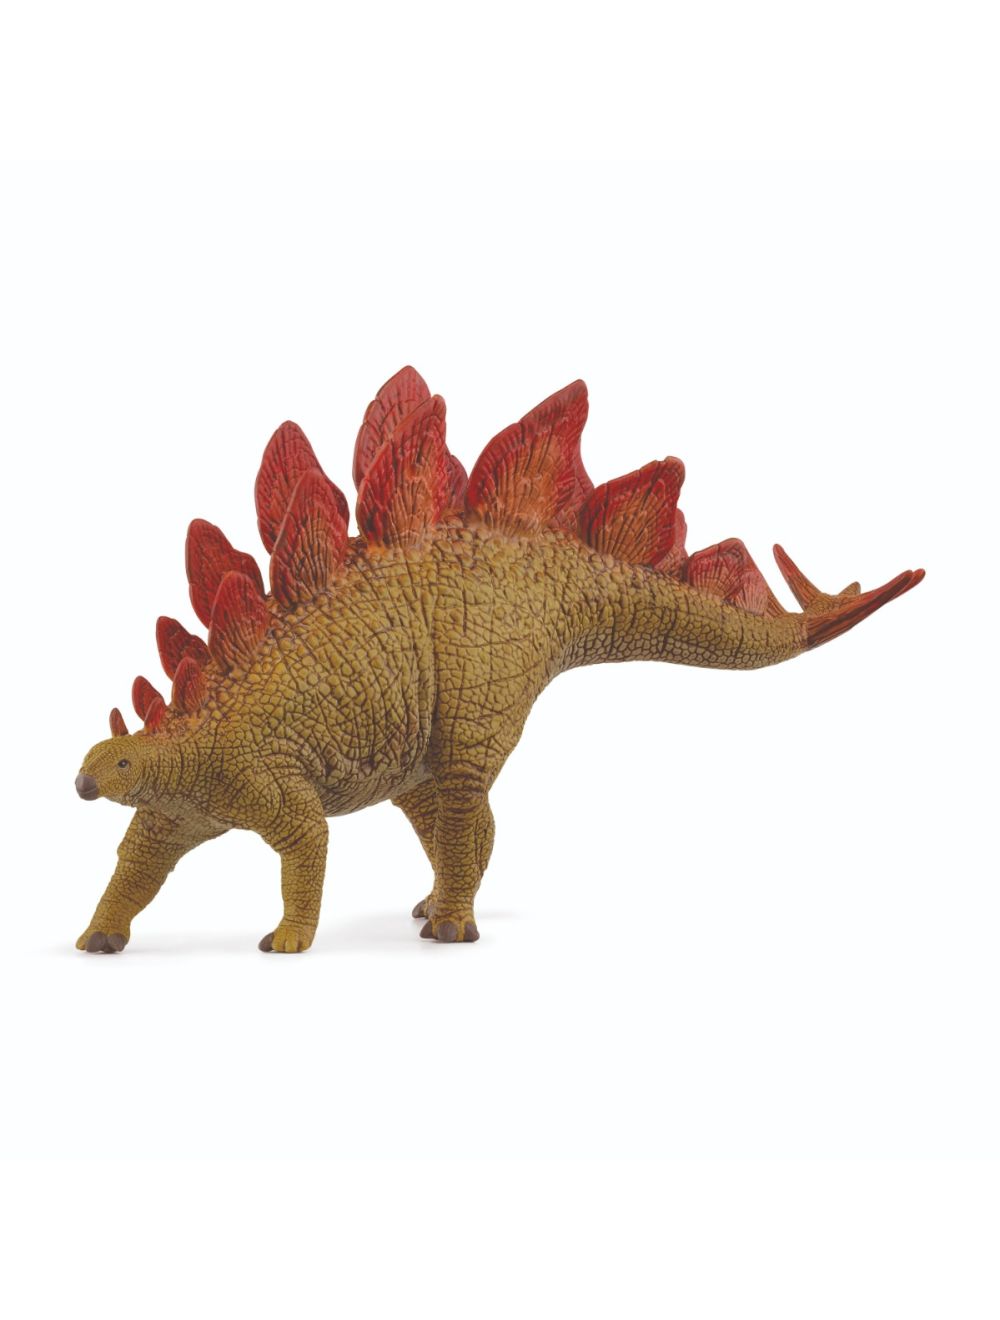 Schleich Dinosaur Stegosaurus 15040